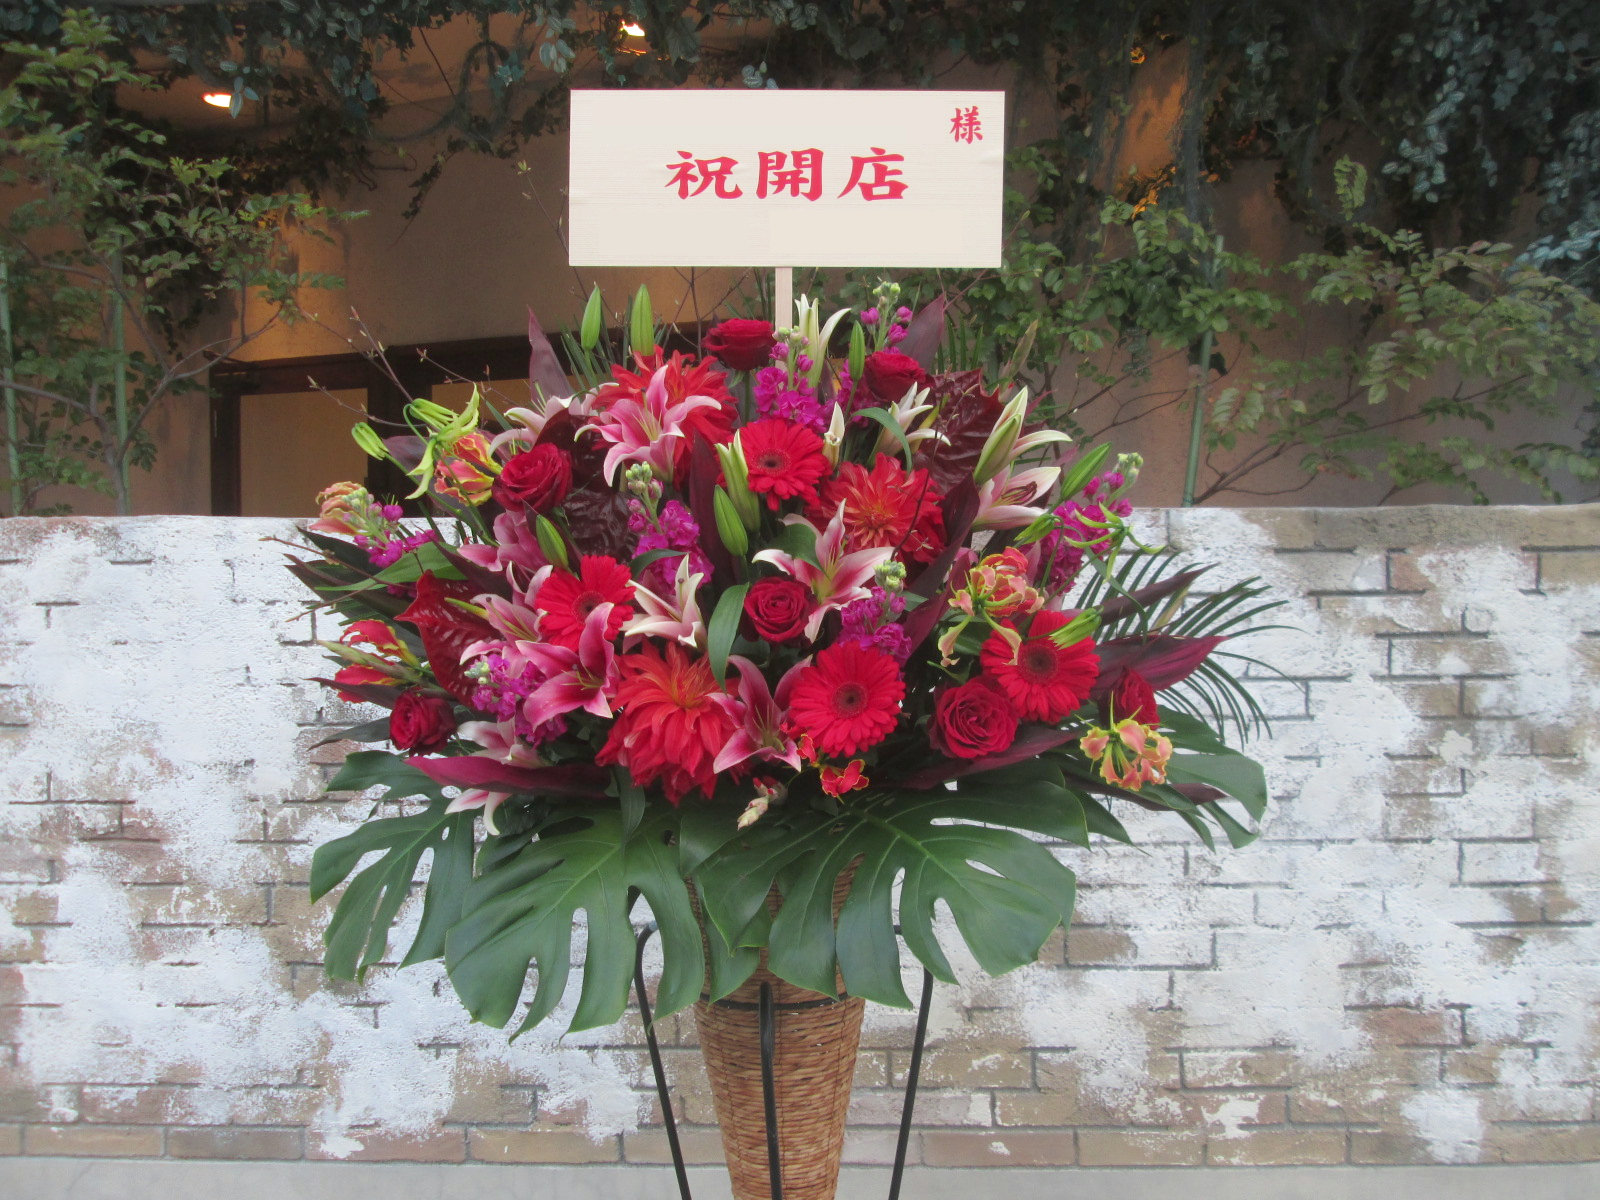 カフェ 喫茶店の開店祝いに贈るフラワーギフト６選 祝花の花助 贈答用の花の選び方やマナーをご紹介